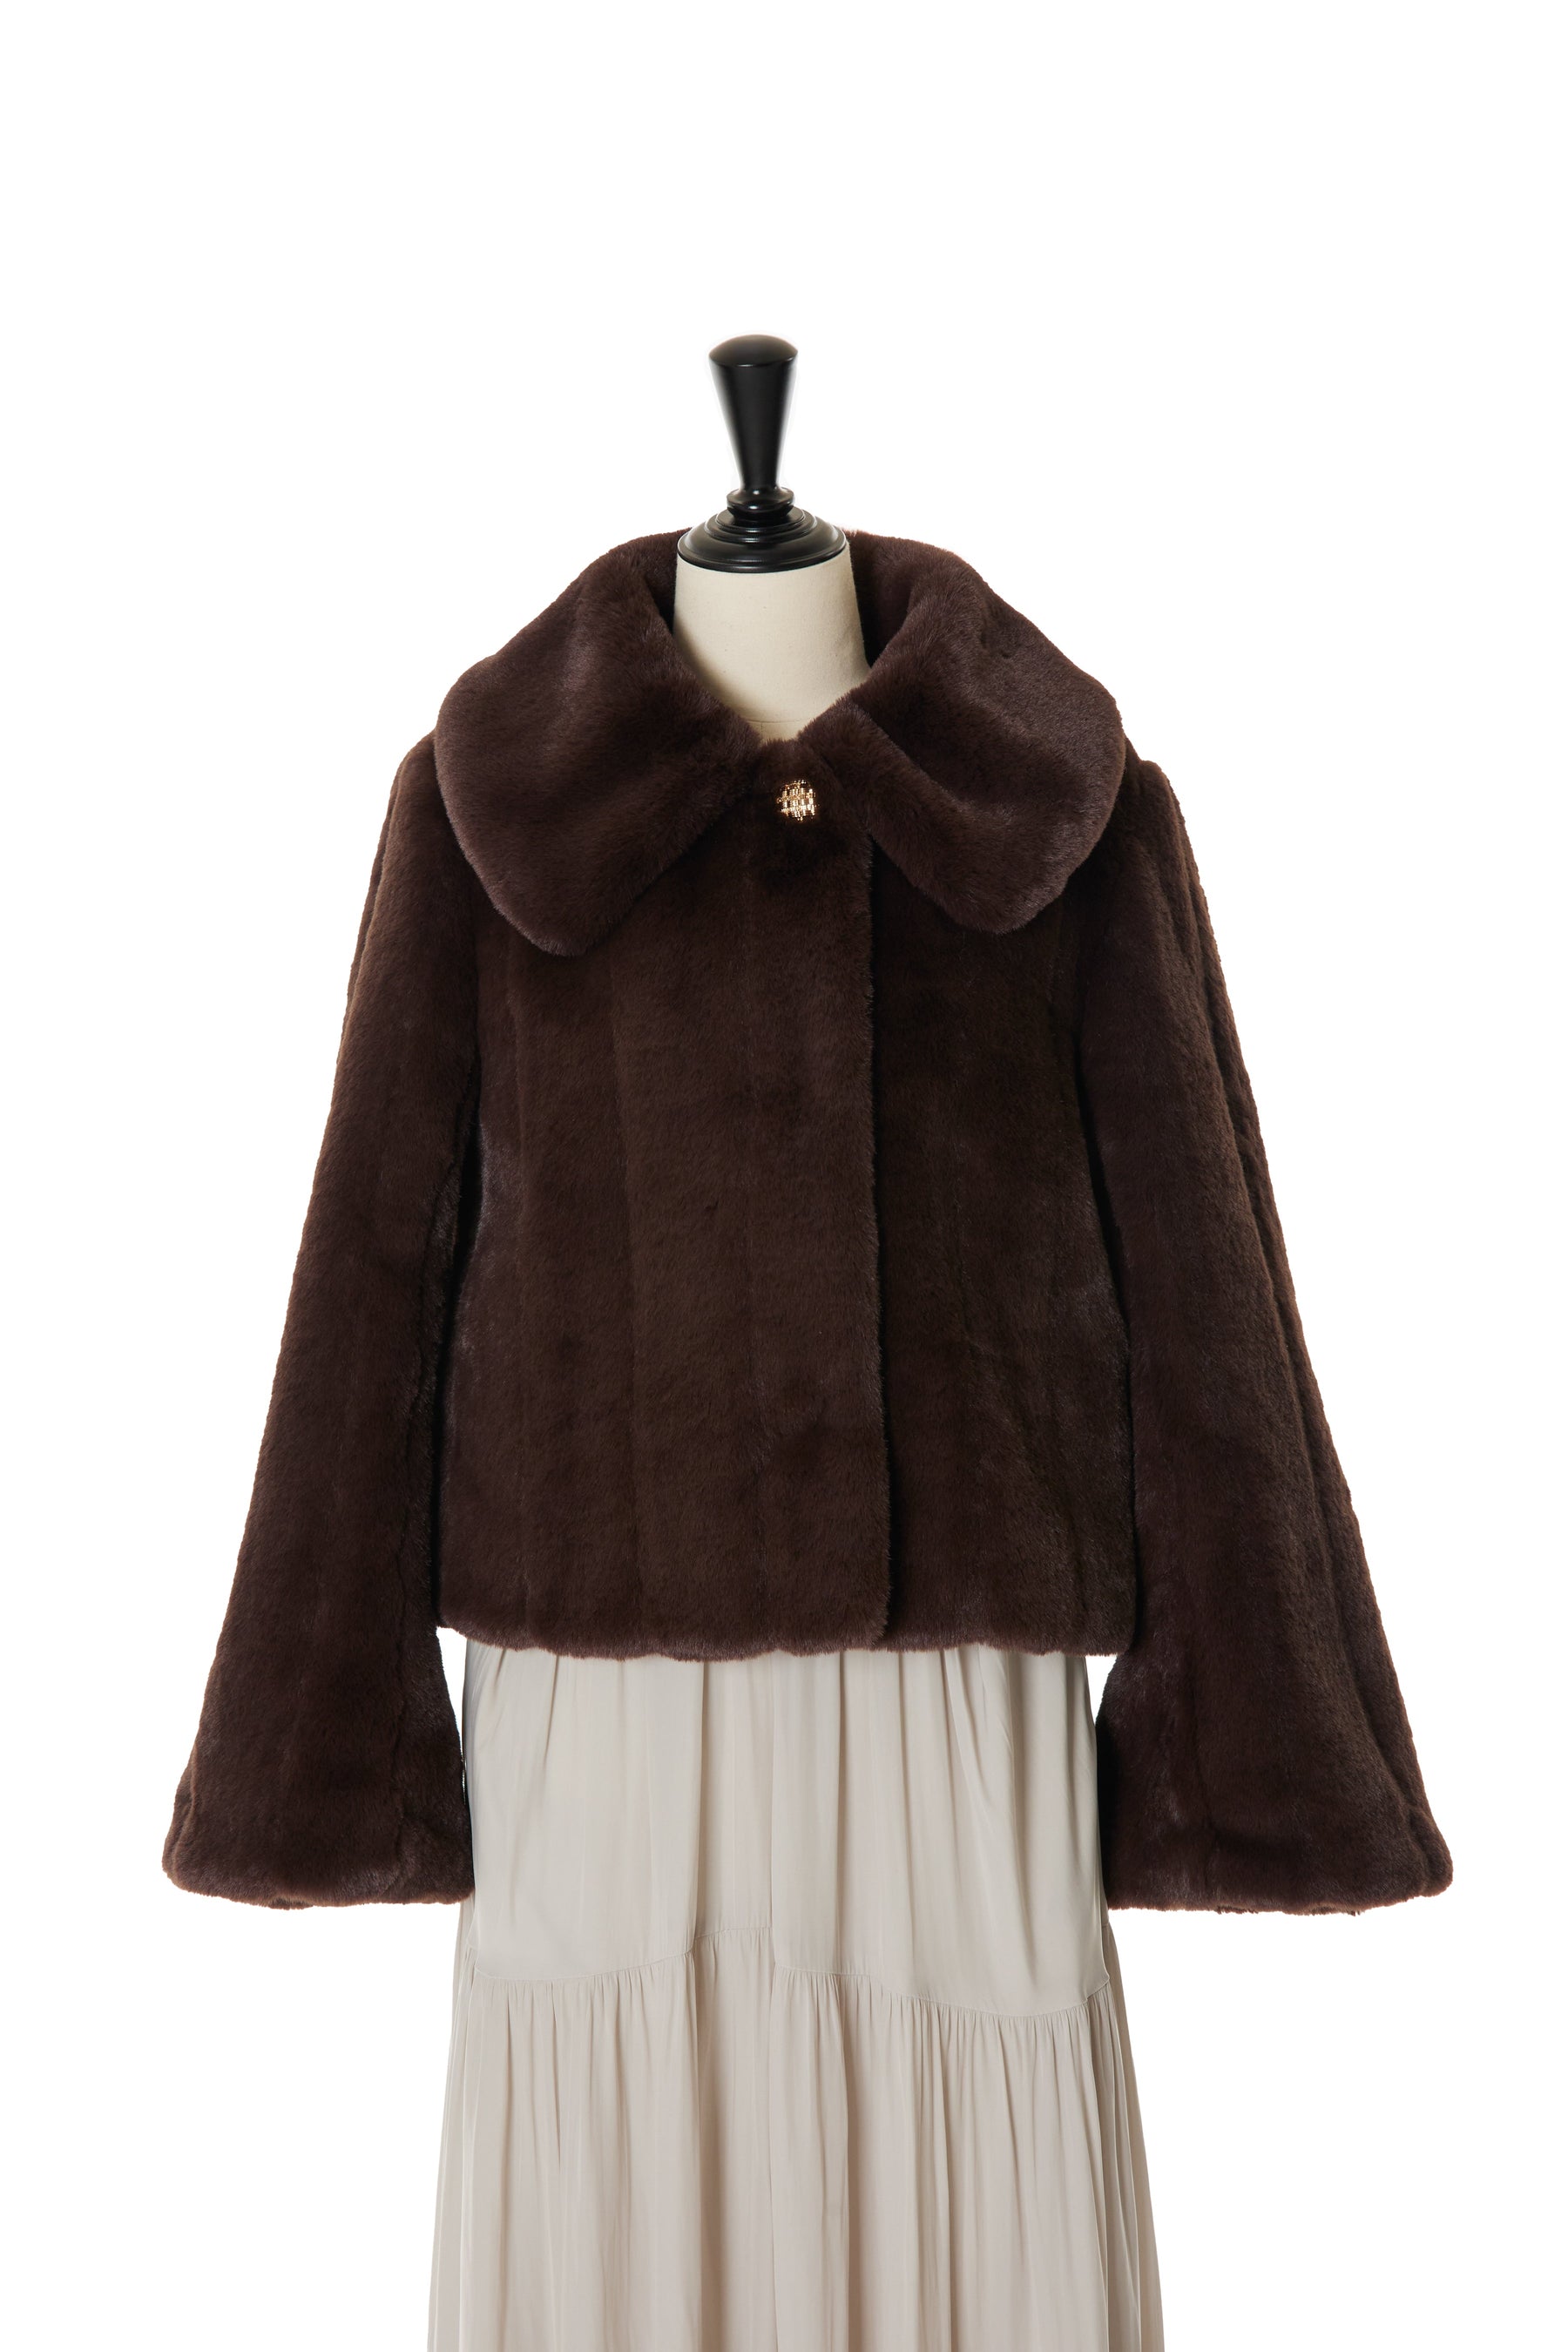 【rich brown】【12月上旬発送】Winter Love Faux Fur Coat